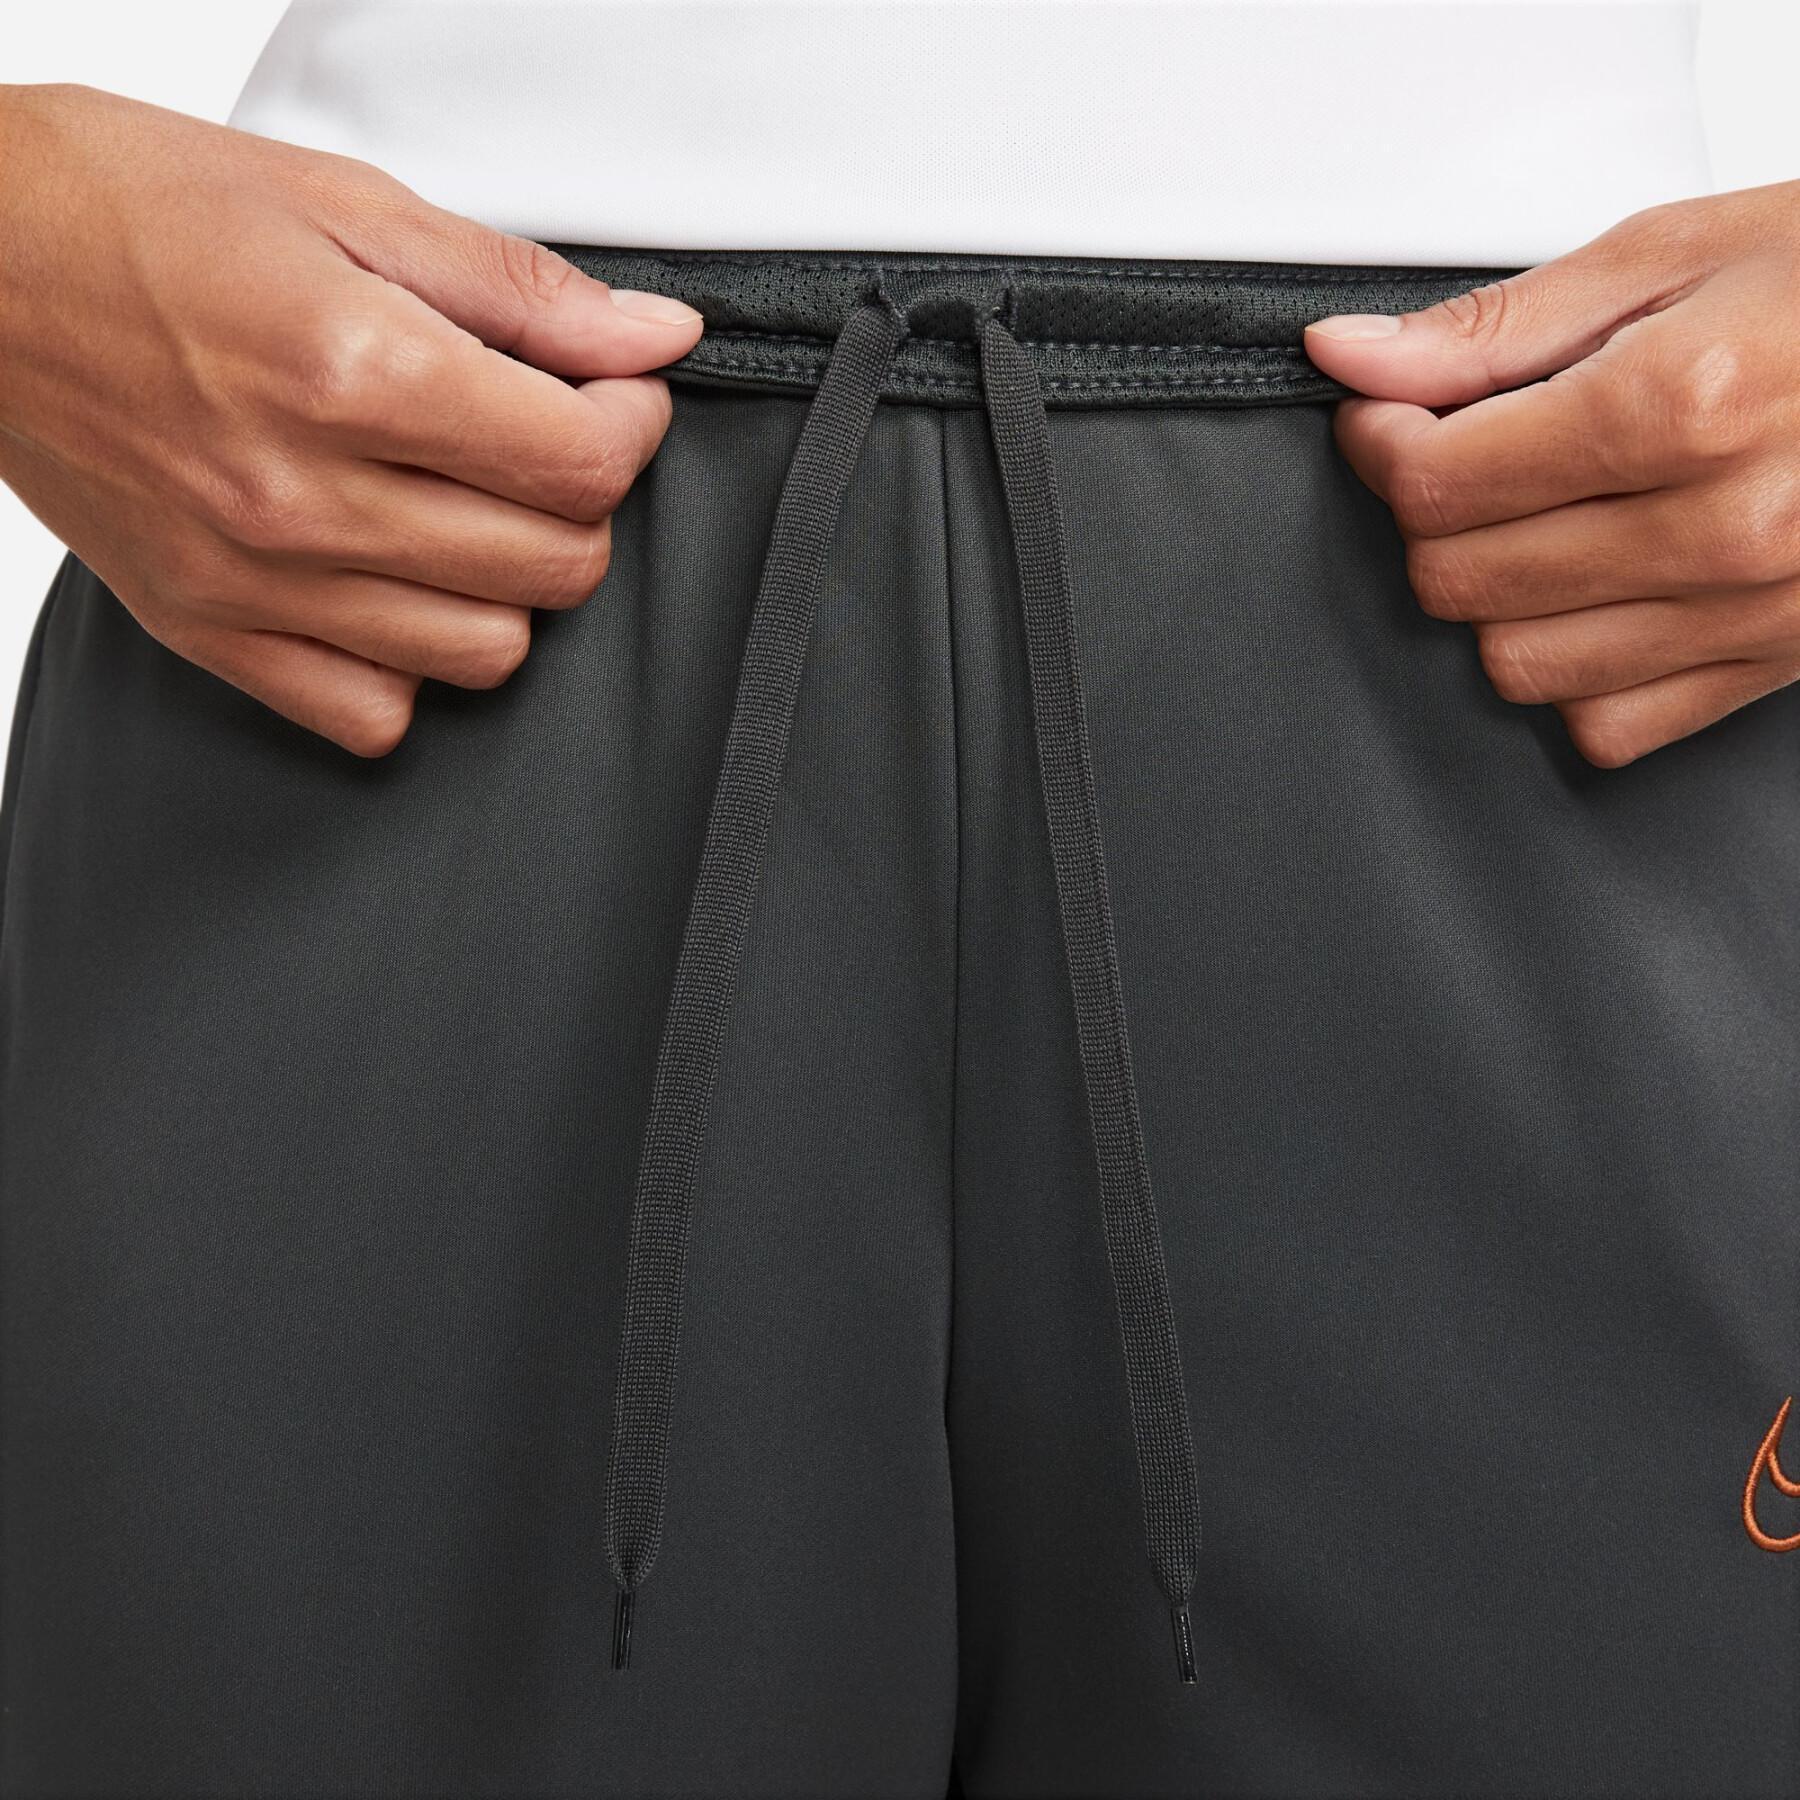 Women's Sweatpants suit Nike Dri-Fit Academy